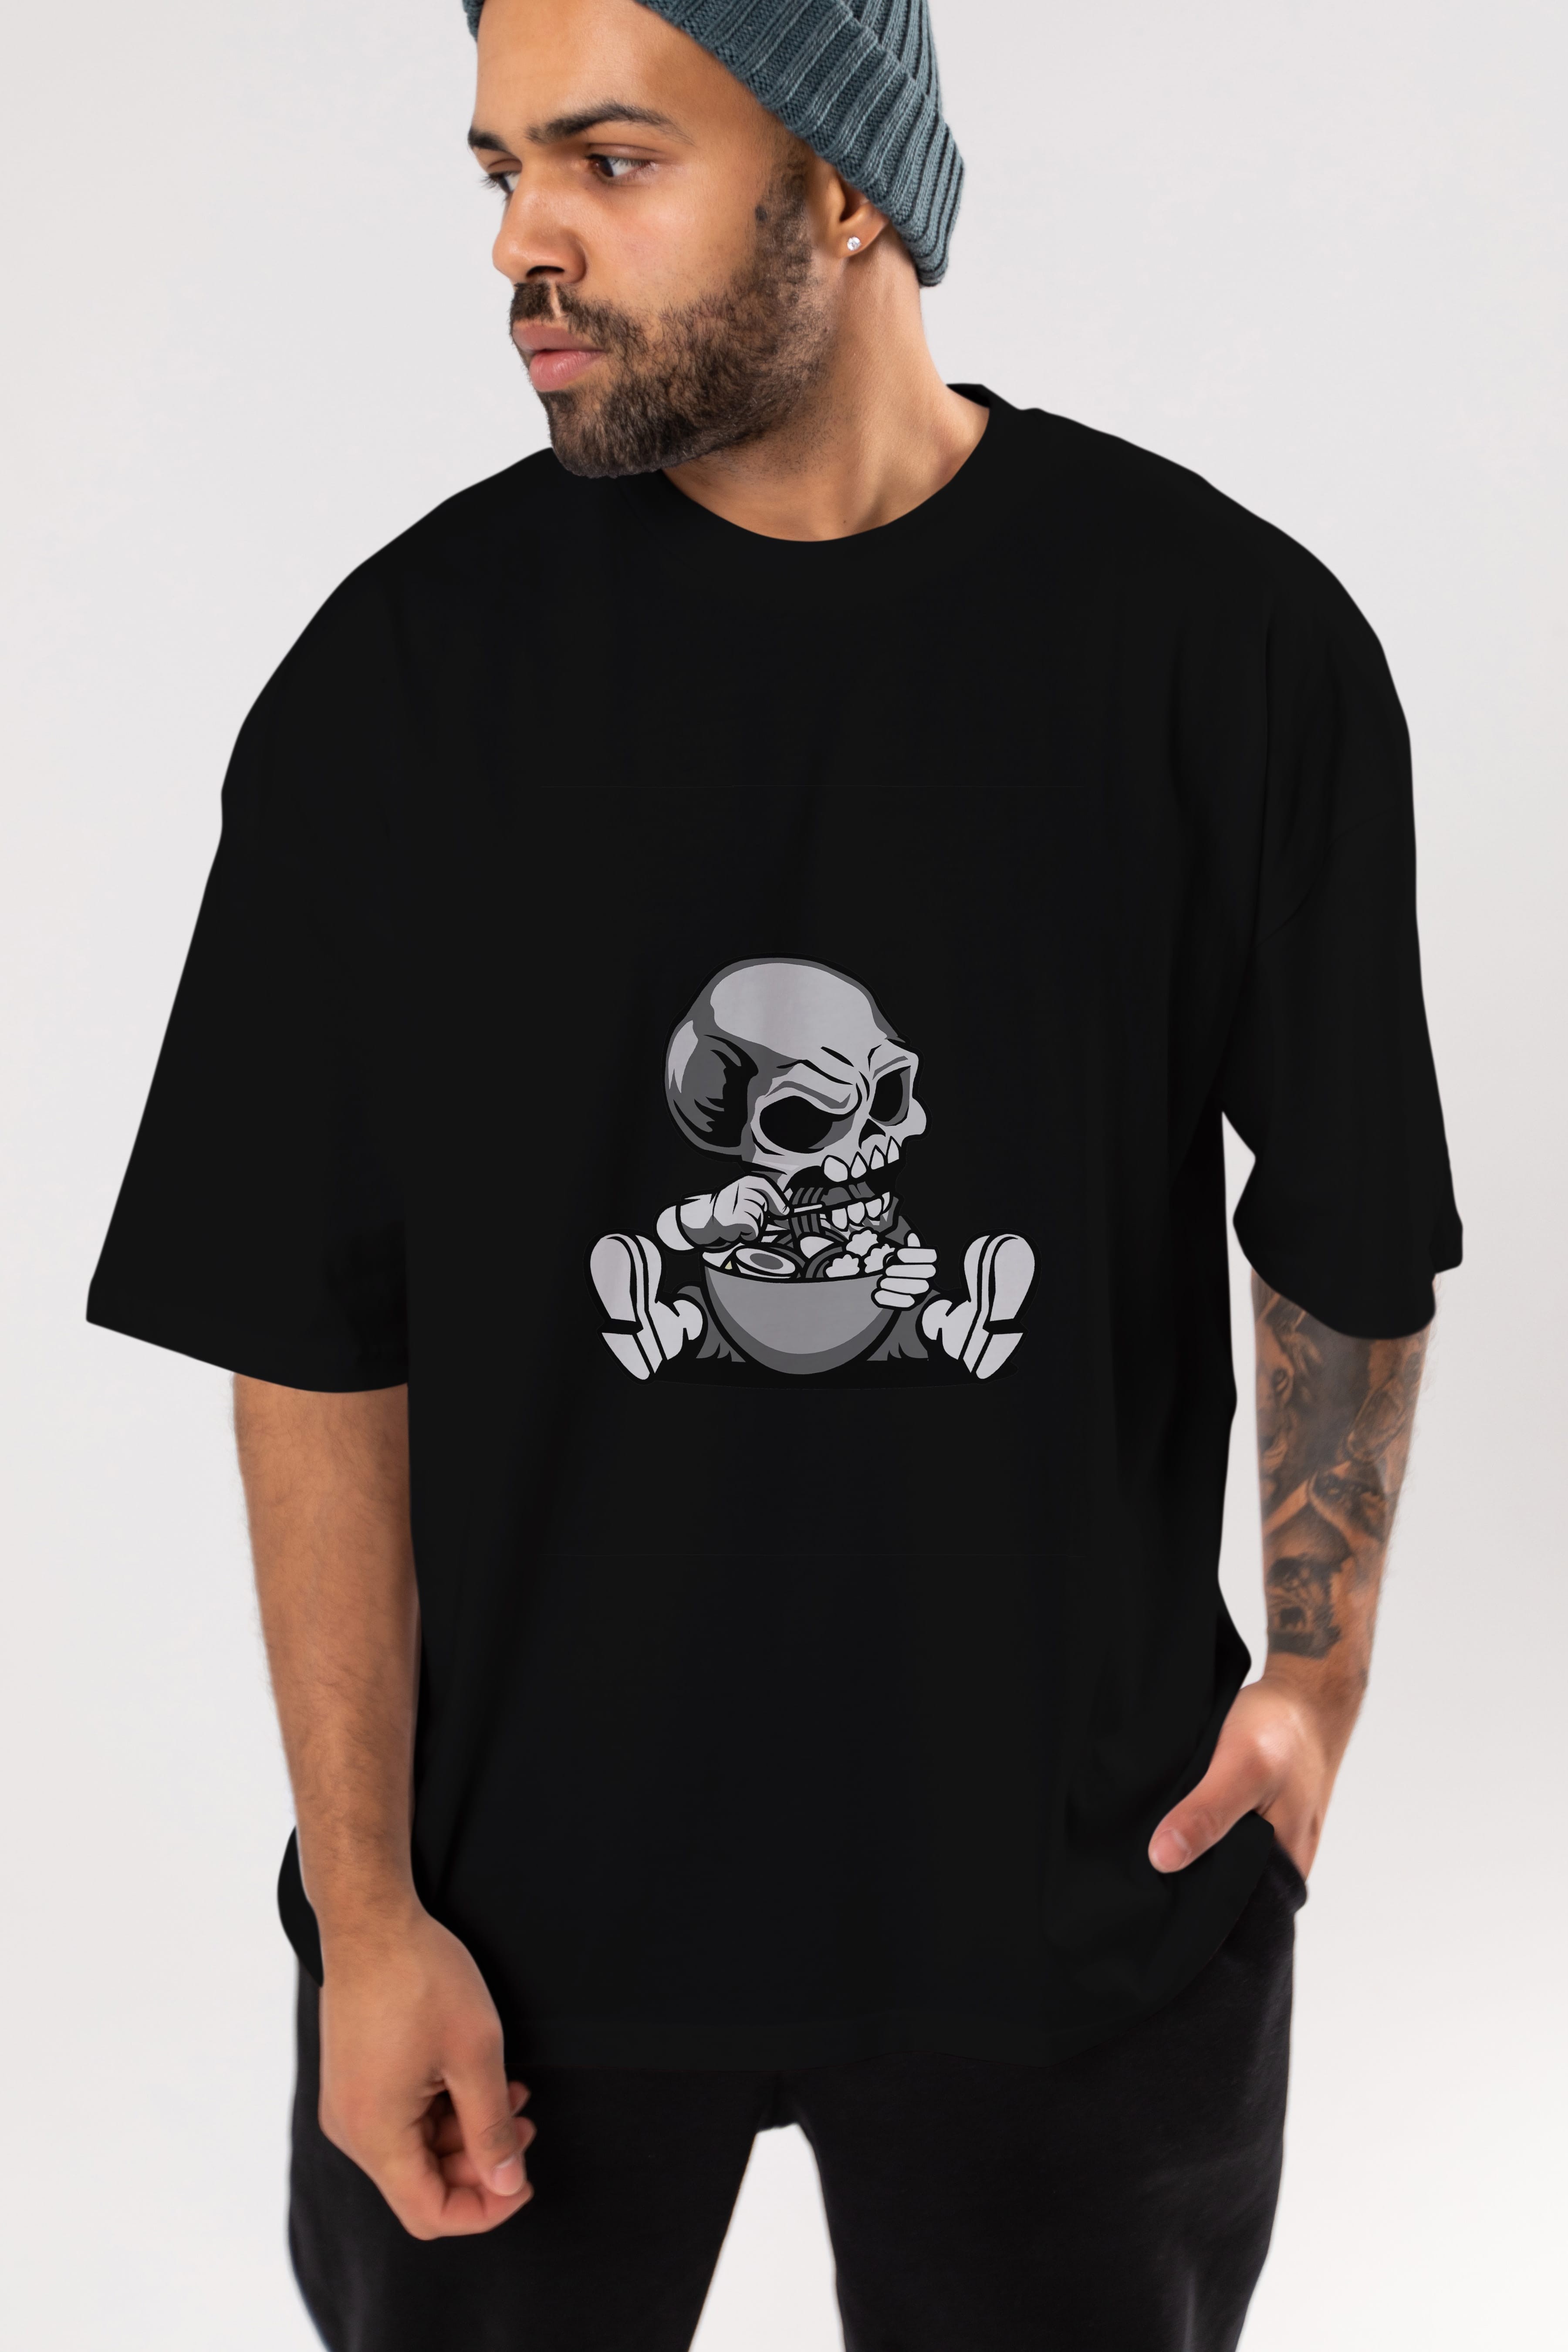 Skull Eat Ramen Ön Baskılı Oversize t-shirt Erkek Kadın Unisex %100 Pamuk tişort